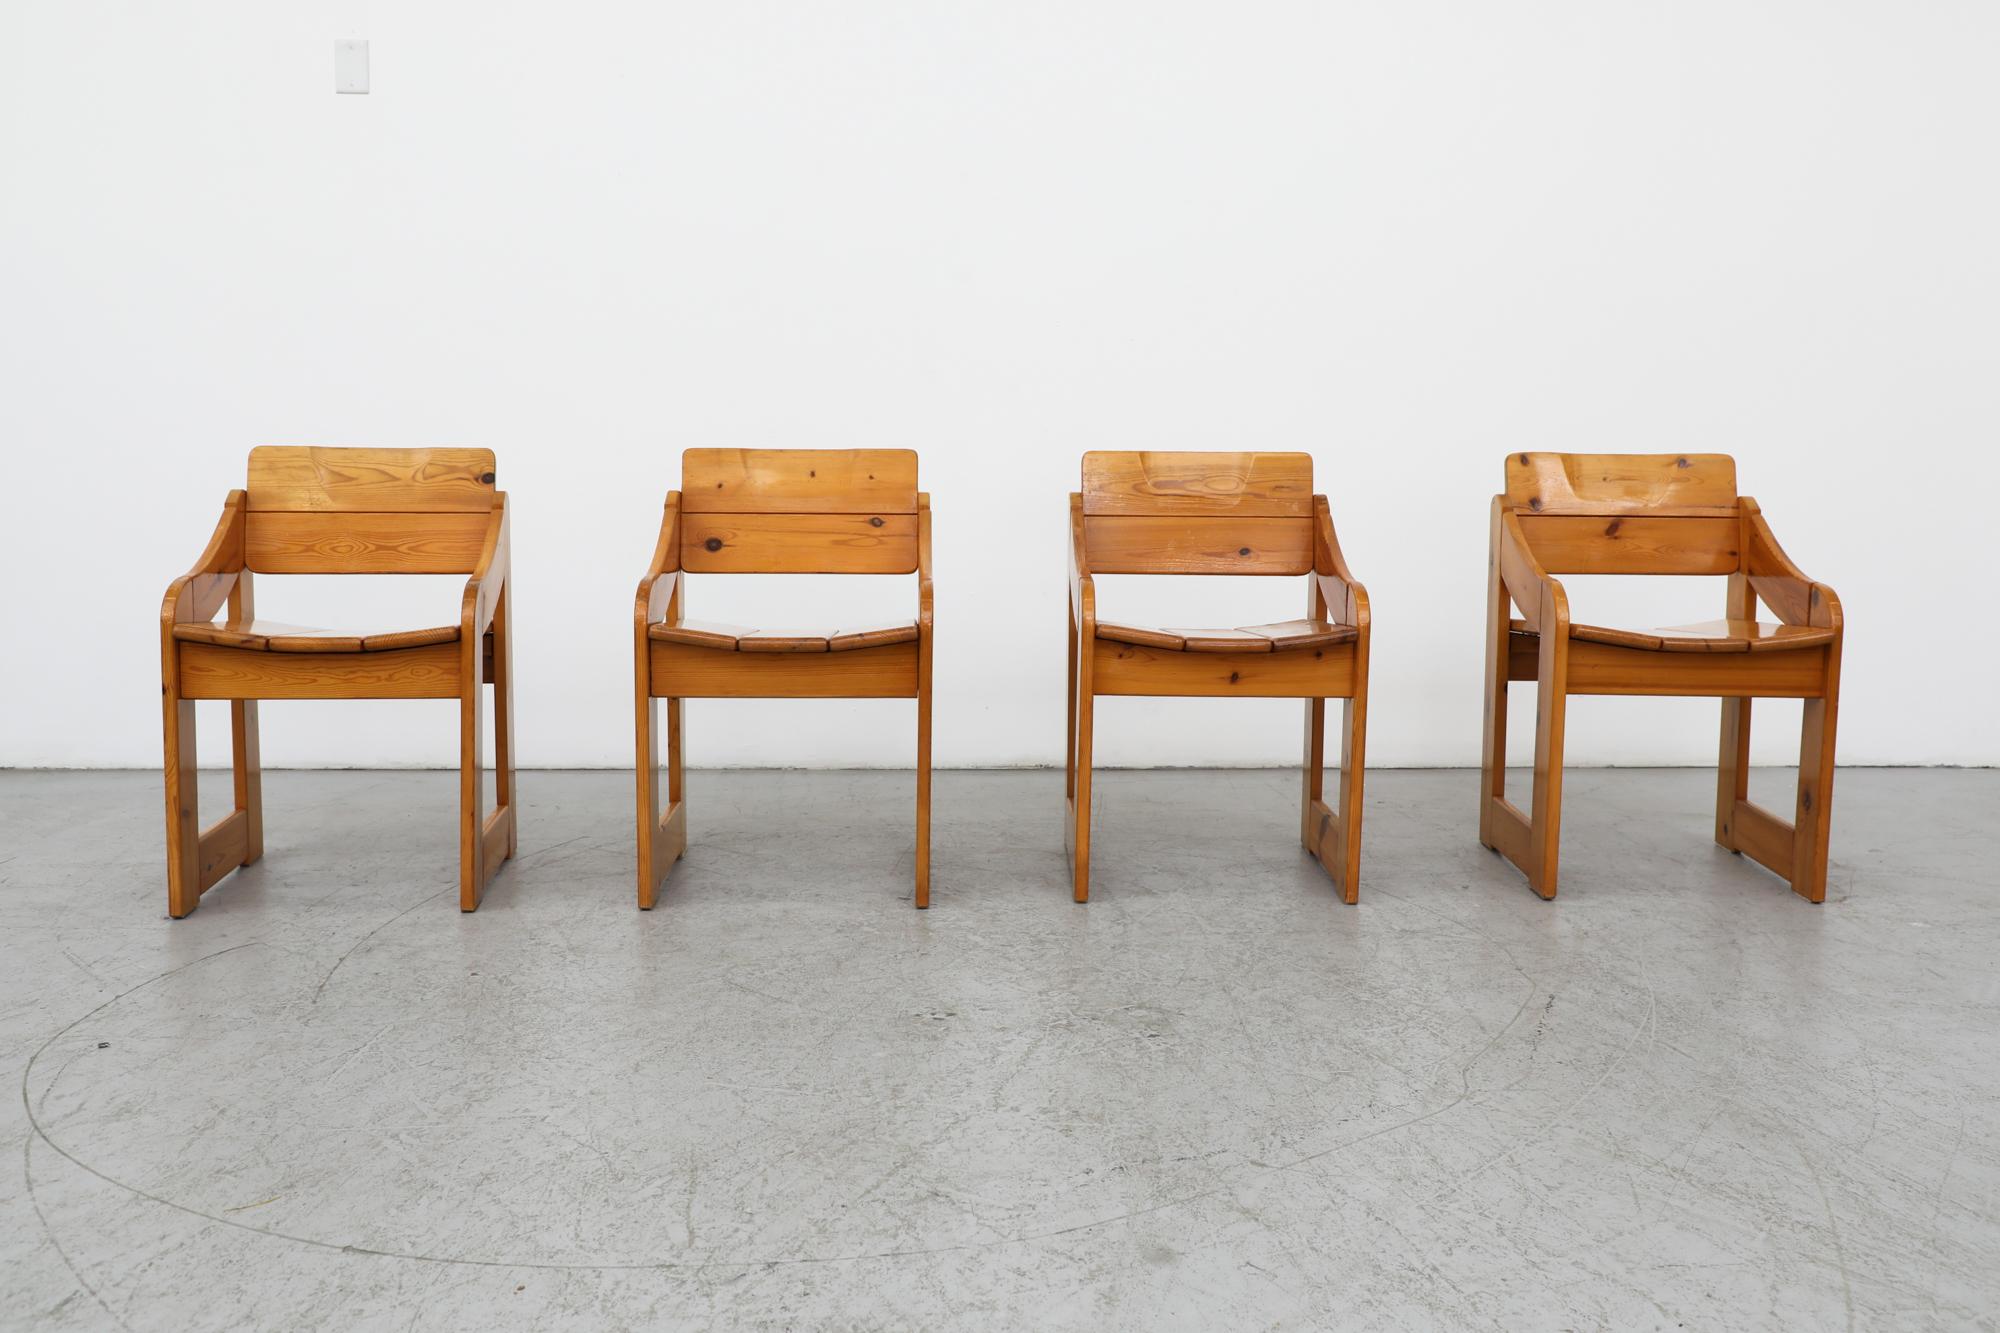 Chaises de salle à manger de style Mod Ate van Apeldoorn des années 1970, à structure carrée en pin, avec accoudoirs inclinés. Une chaise a été réparée par le propriétaire précédent avec des vis visibles sur le côté. En état d'origine, avec quelques